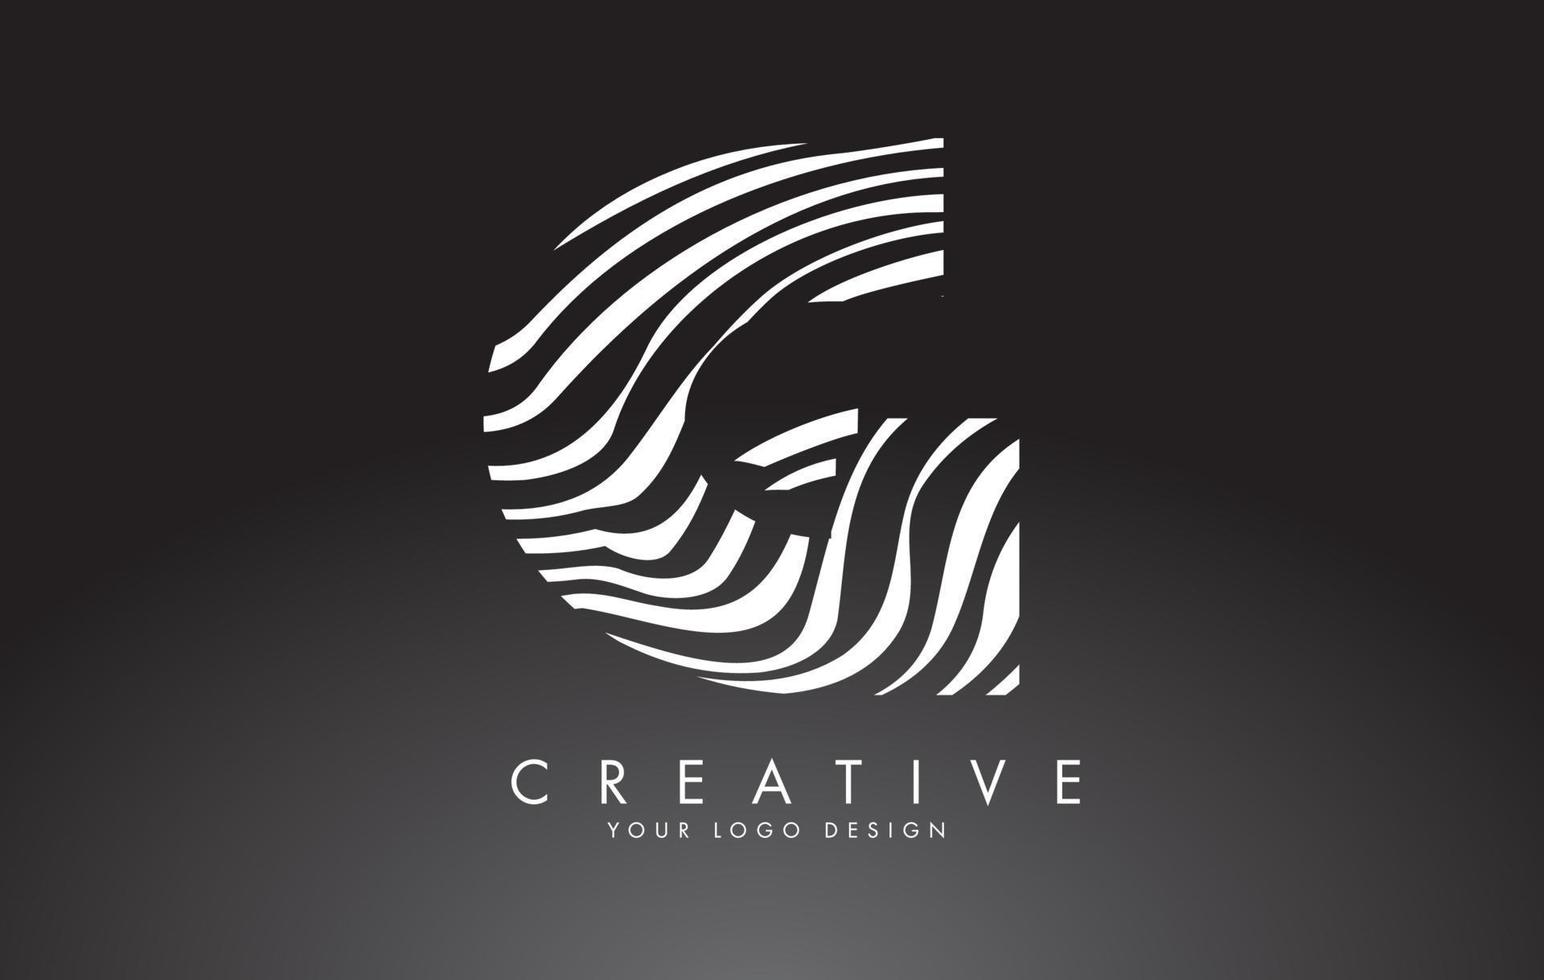 g lettera logo design con impronta digitale, legno bianco e nero o texture zebra su sfondo nero. vettore